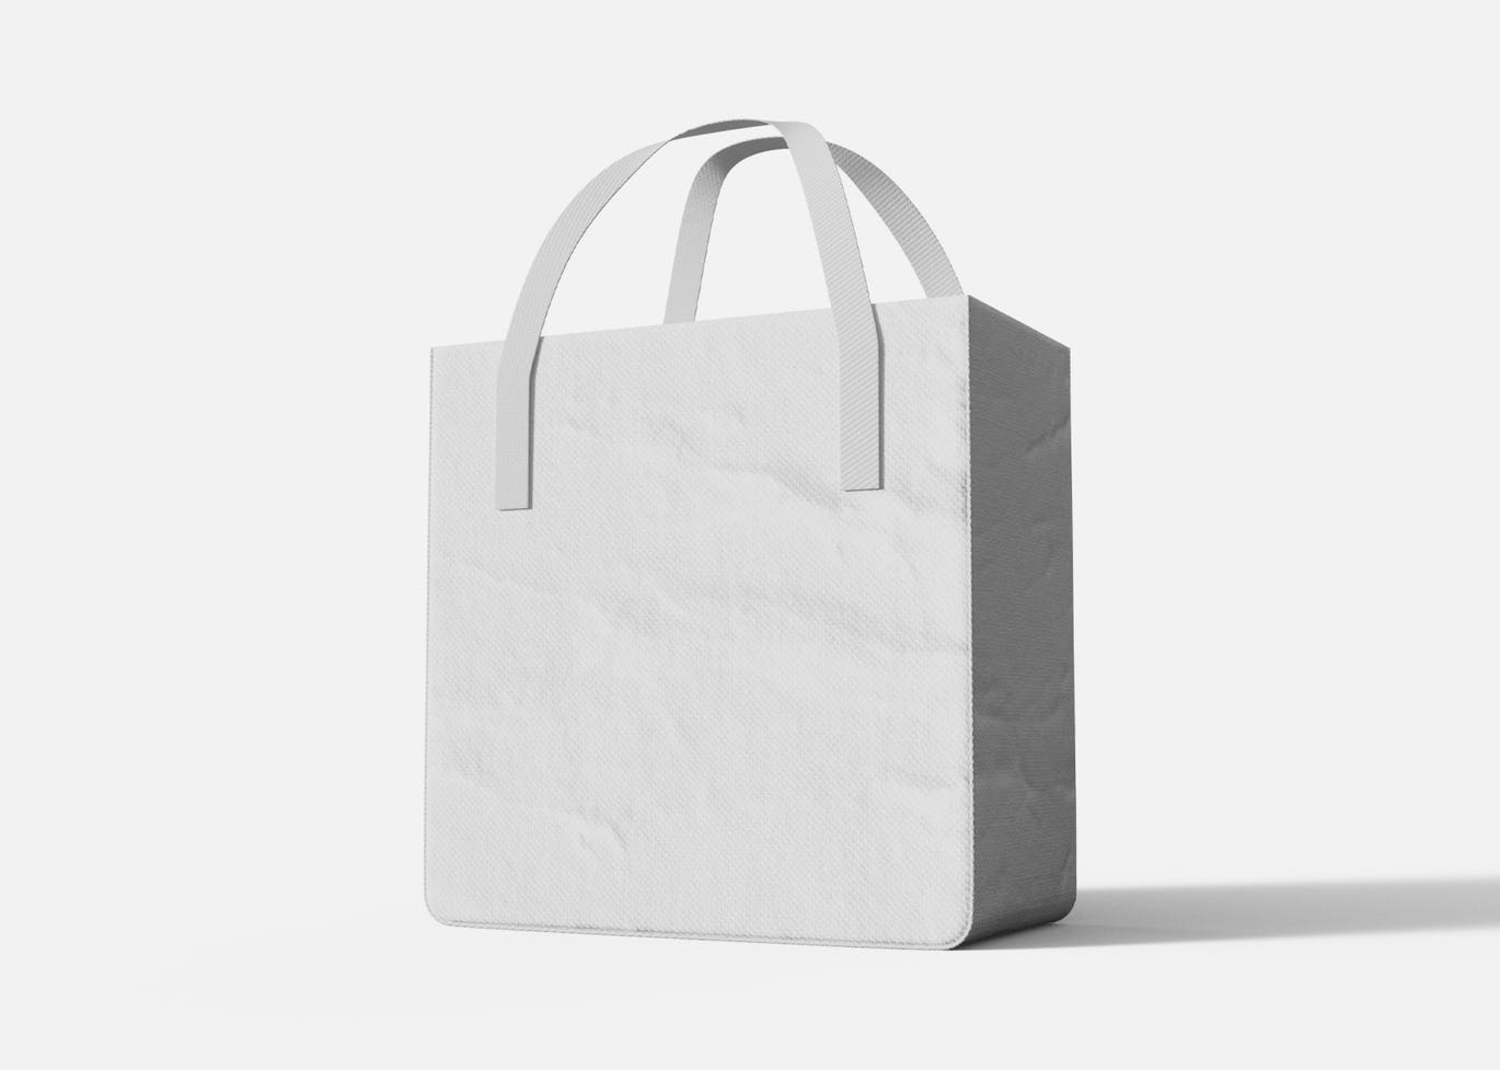 4 环保购物袋品牌无纺布袋床上用品四件套袋设计样机 (PSD)